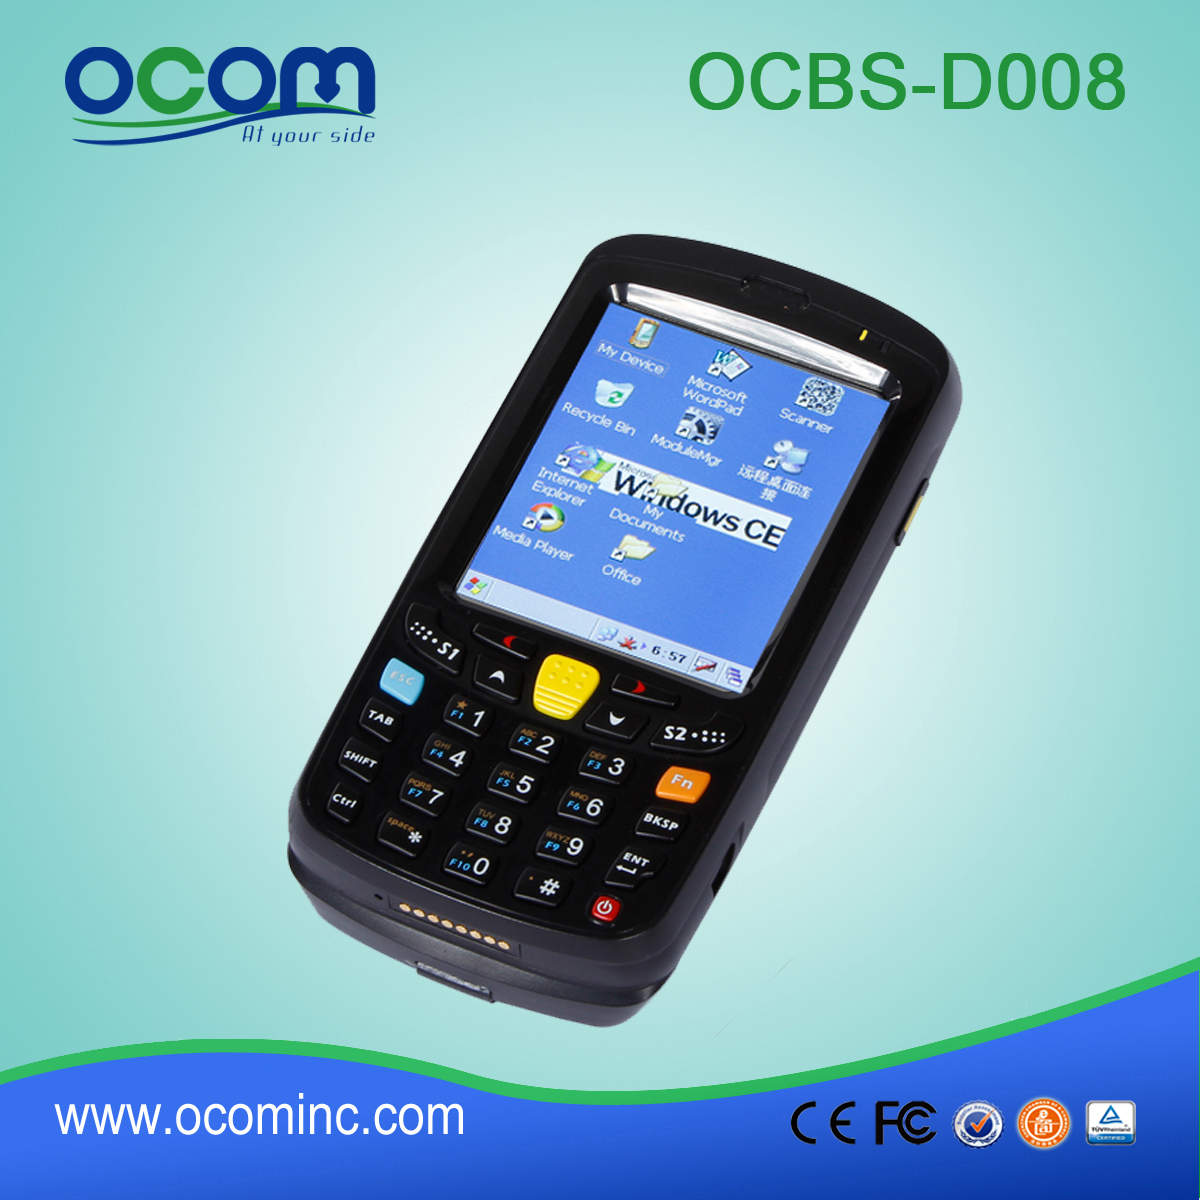 تصميم جيد WIN CE 5.0 وبناء PDA الصناعية OCBS-D008